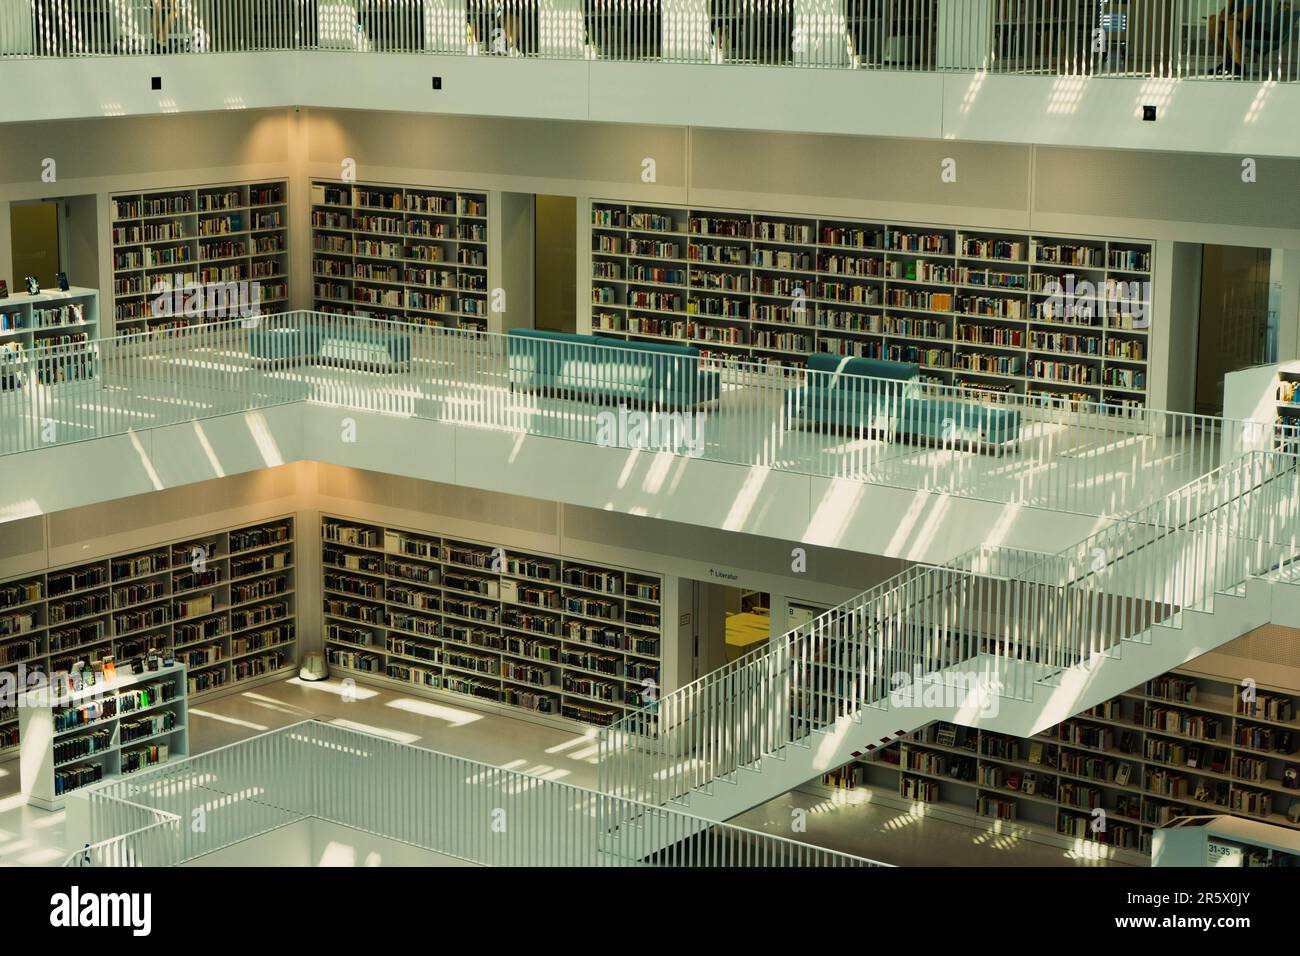 Vue aérienne d'une bibliothèque bien garnie comprenant plusieurs étagères  et tables de livres Photo Stock - Alamy